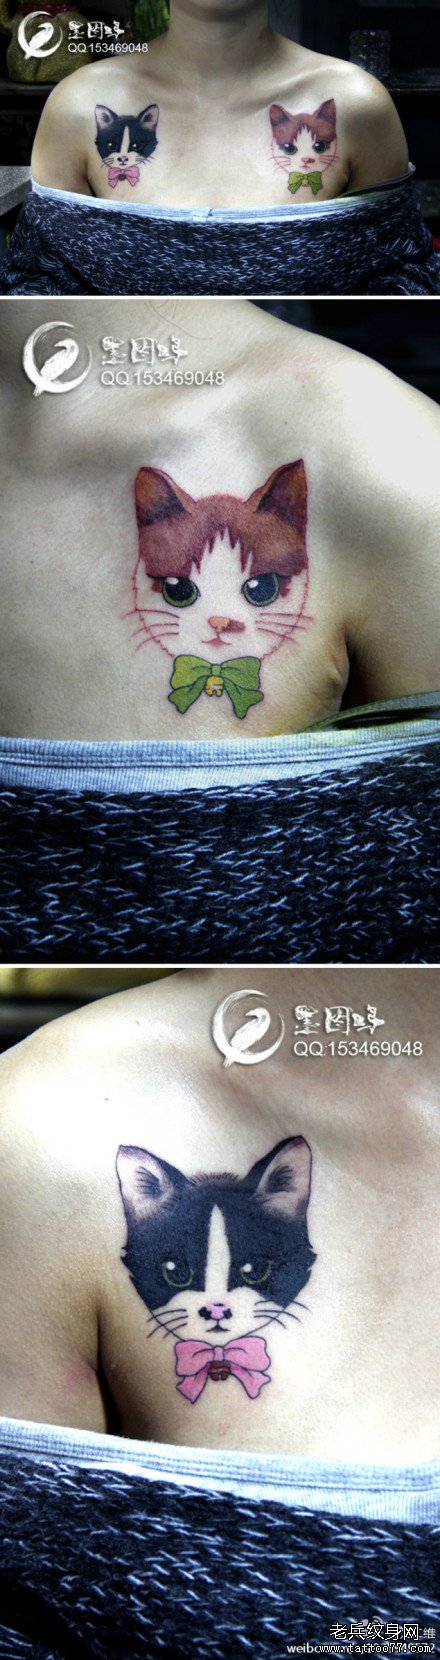 美女肩膀处最新最时尚的猫咪纹身图案